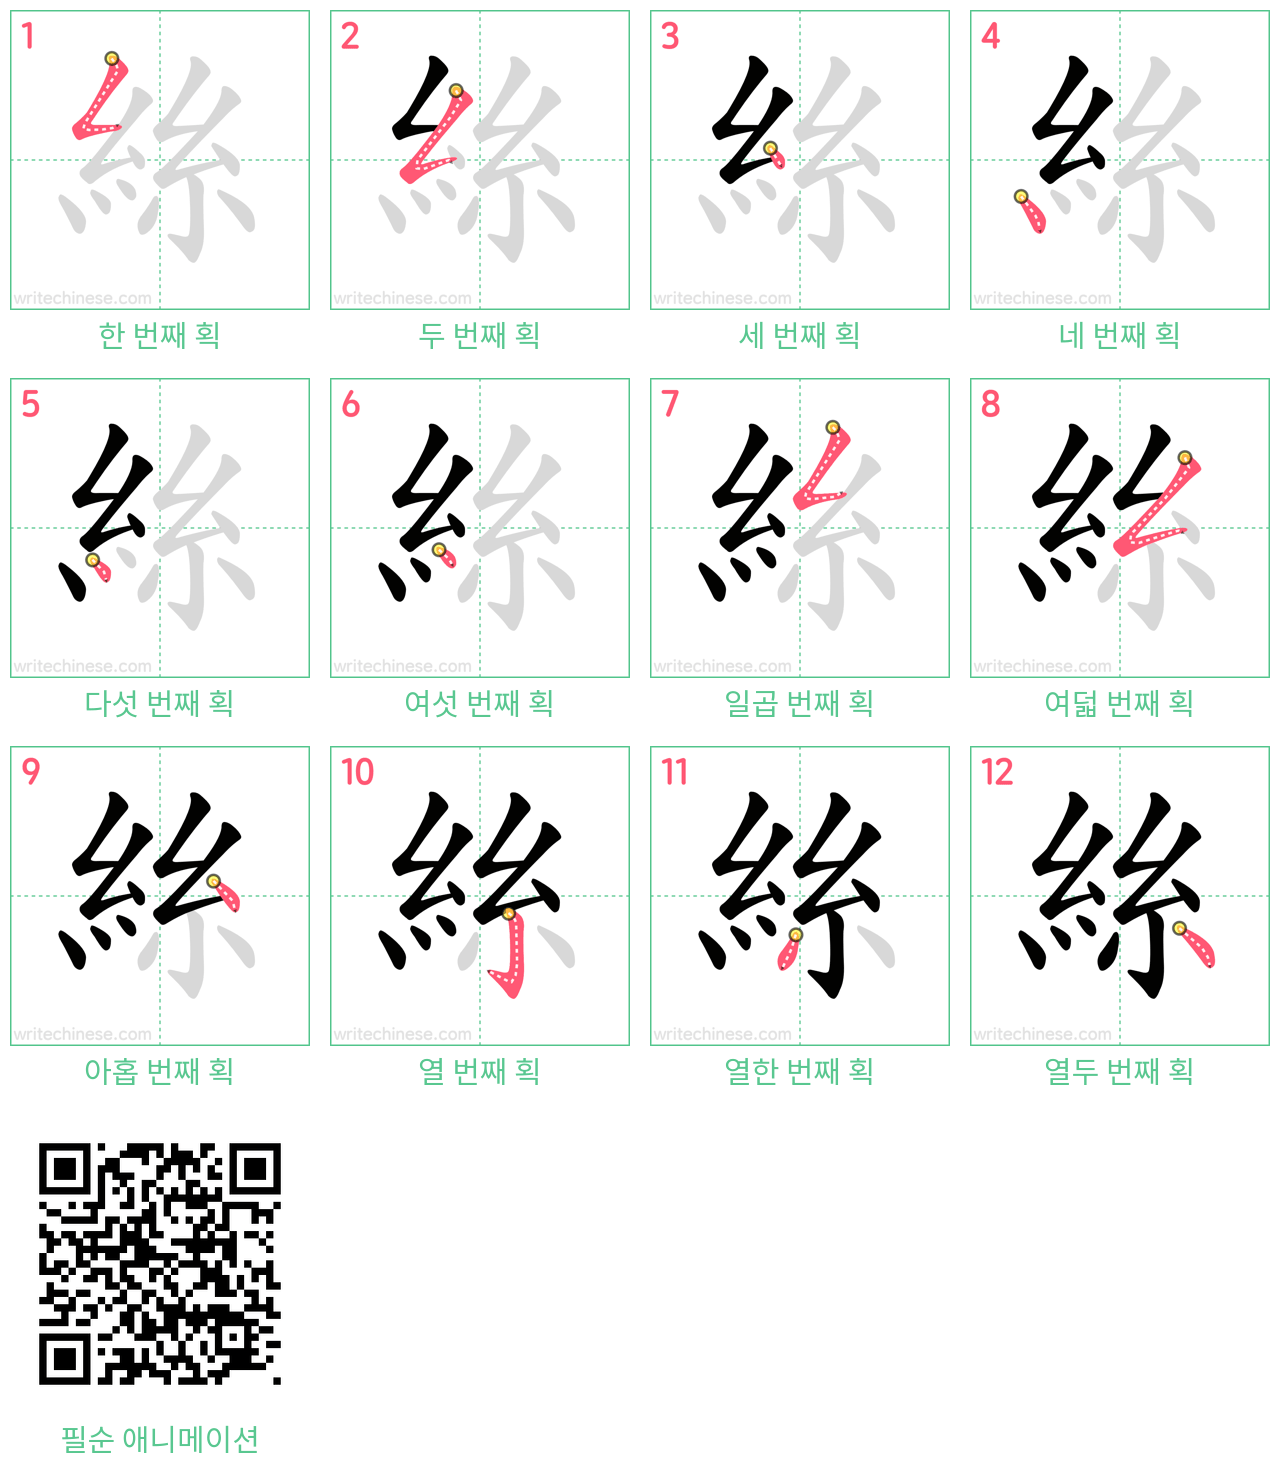 絲 step-by-step stroke order diagrams